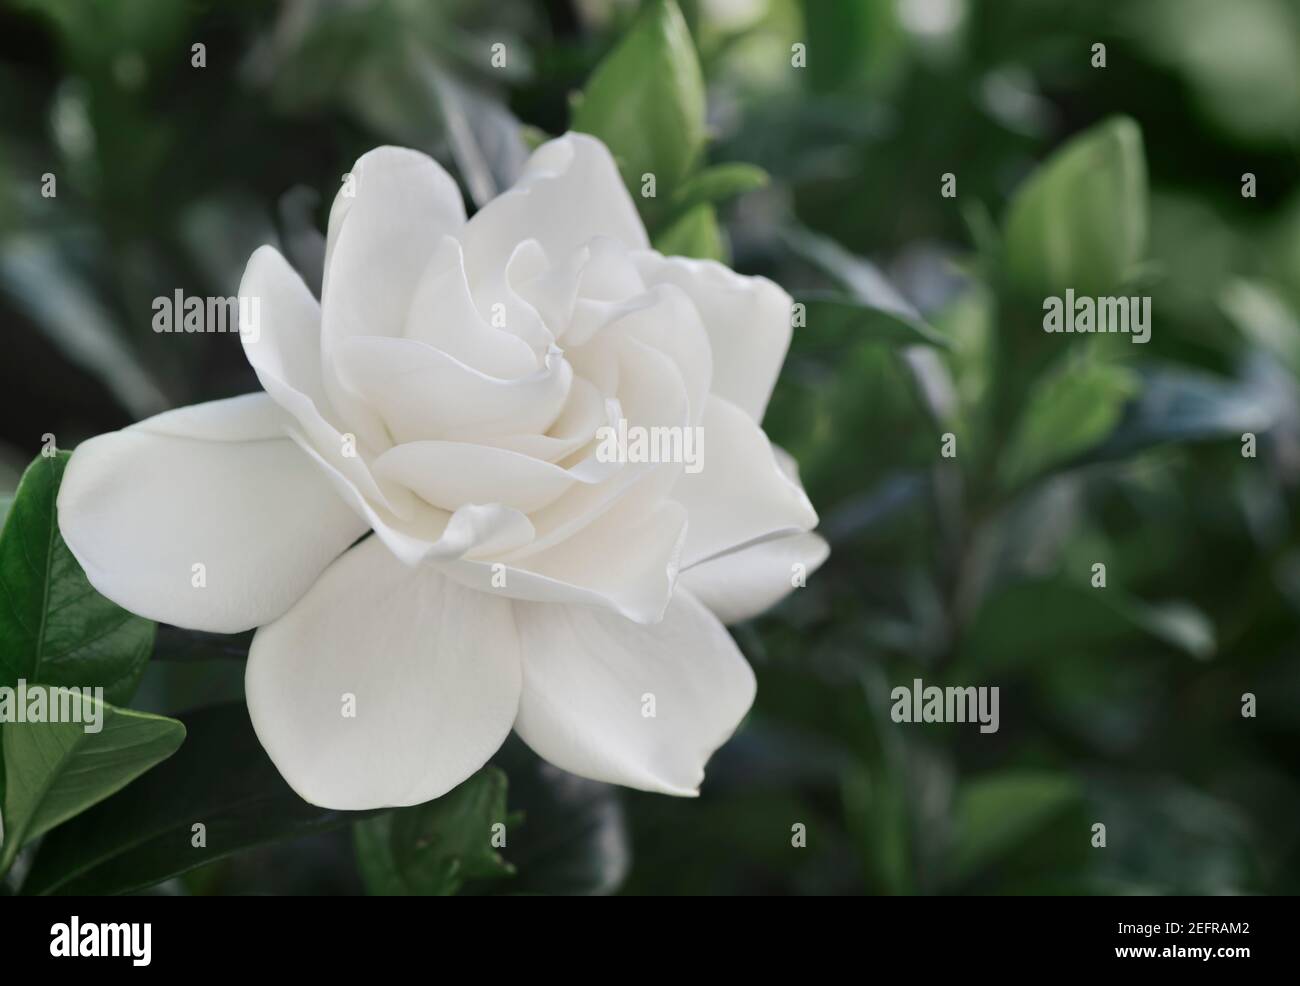 Gardenia jasminoides, gros plan de fleur blanche sur une plante à fleurs Banque D'Images